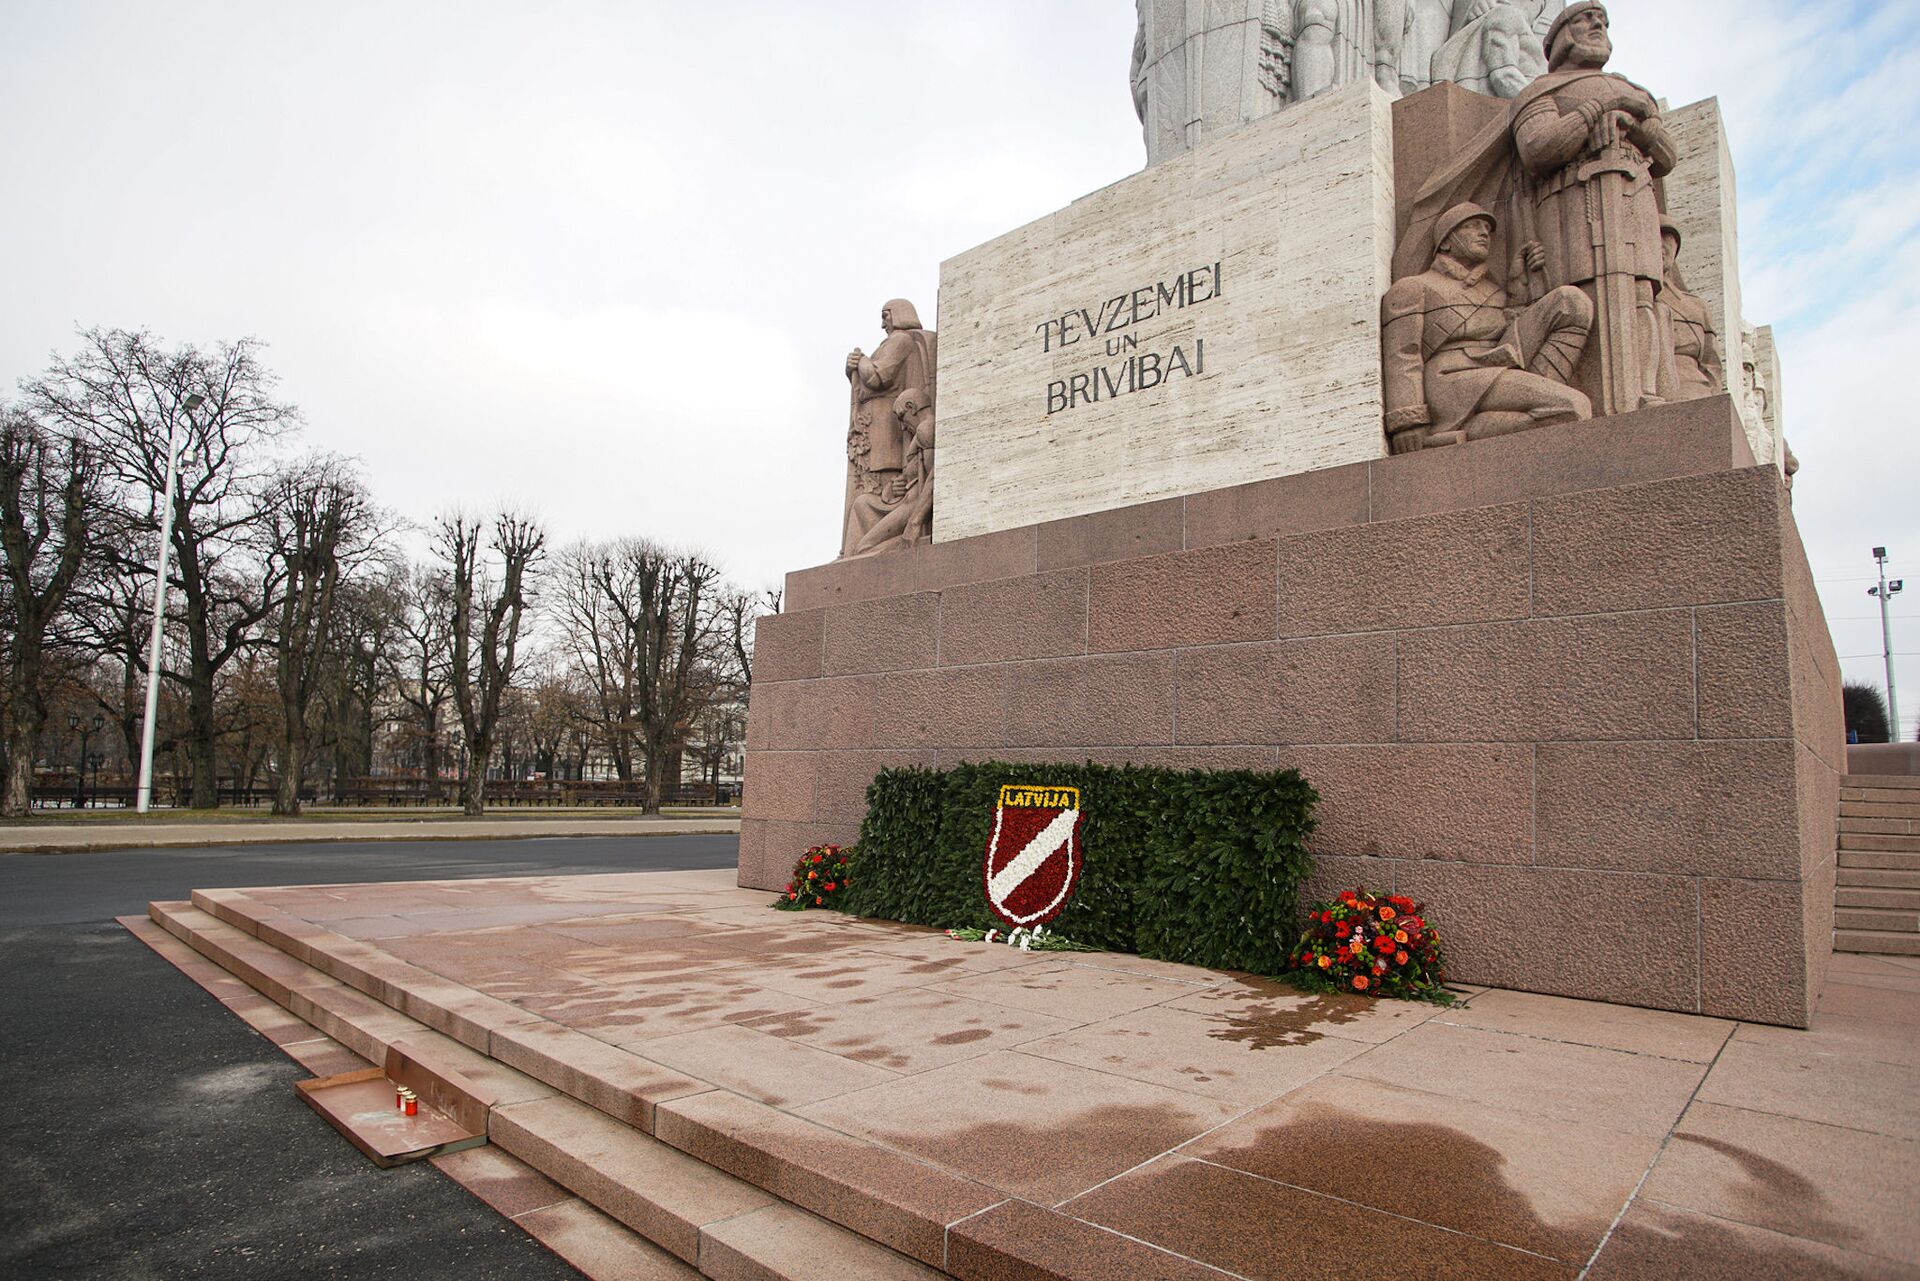 К памятнику пришли единицы: COVID почти очистил центр Риги от почитателей легионеров СС - Sputnik Латвия, 1920, 16.03.2021